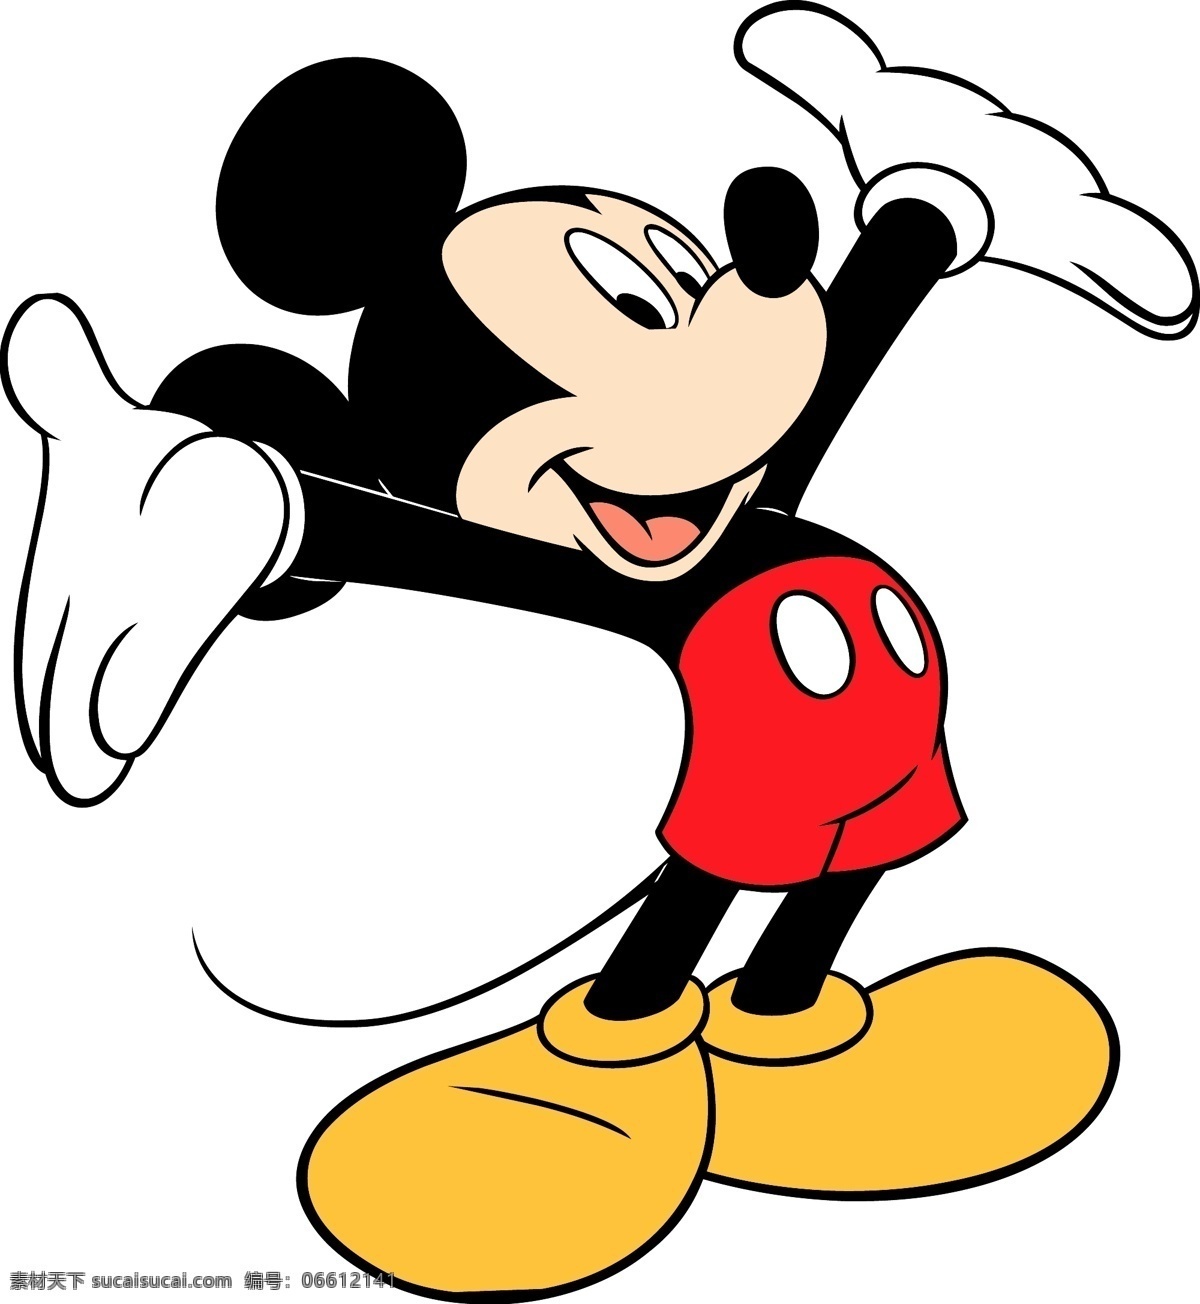 米奇 老鼠 米奇老鼠 矢量 图形 卡通下载 迪士尼 艺术 载体 免费矢量米奇 米奇老鼠图案 文件 米奇老鼠米妮 其他矢量图